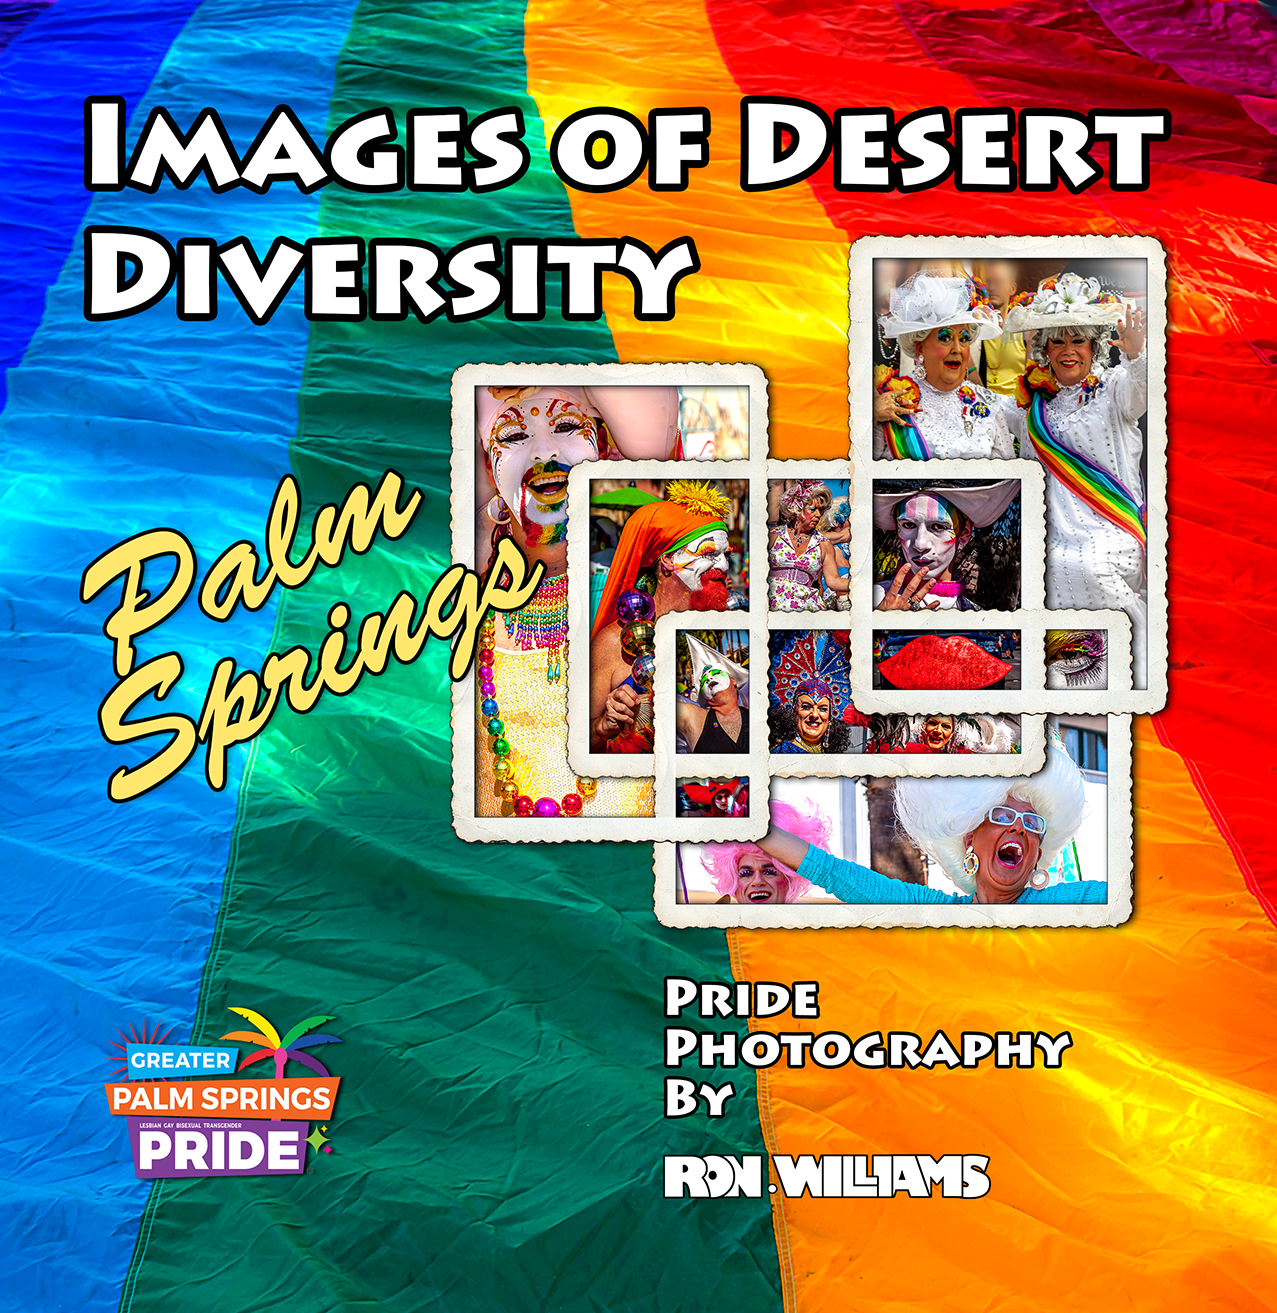 Images of Desert Diversity